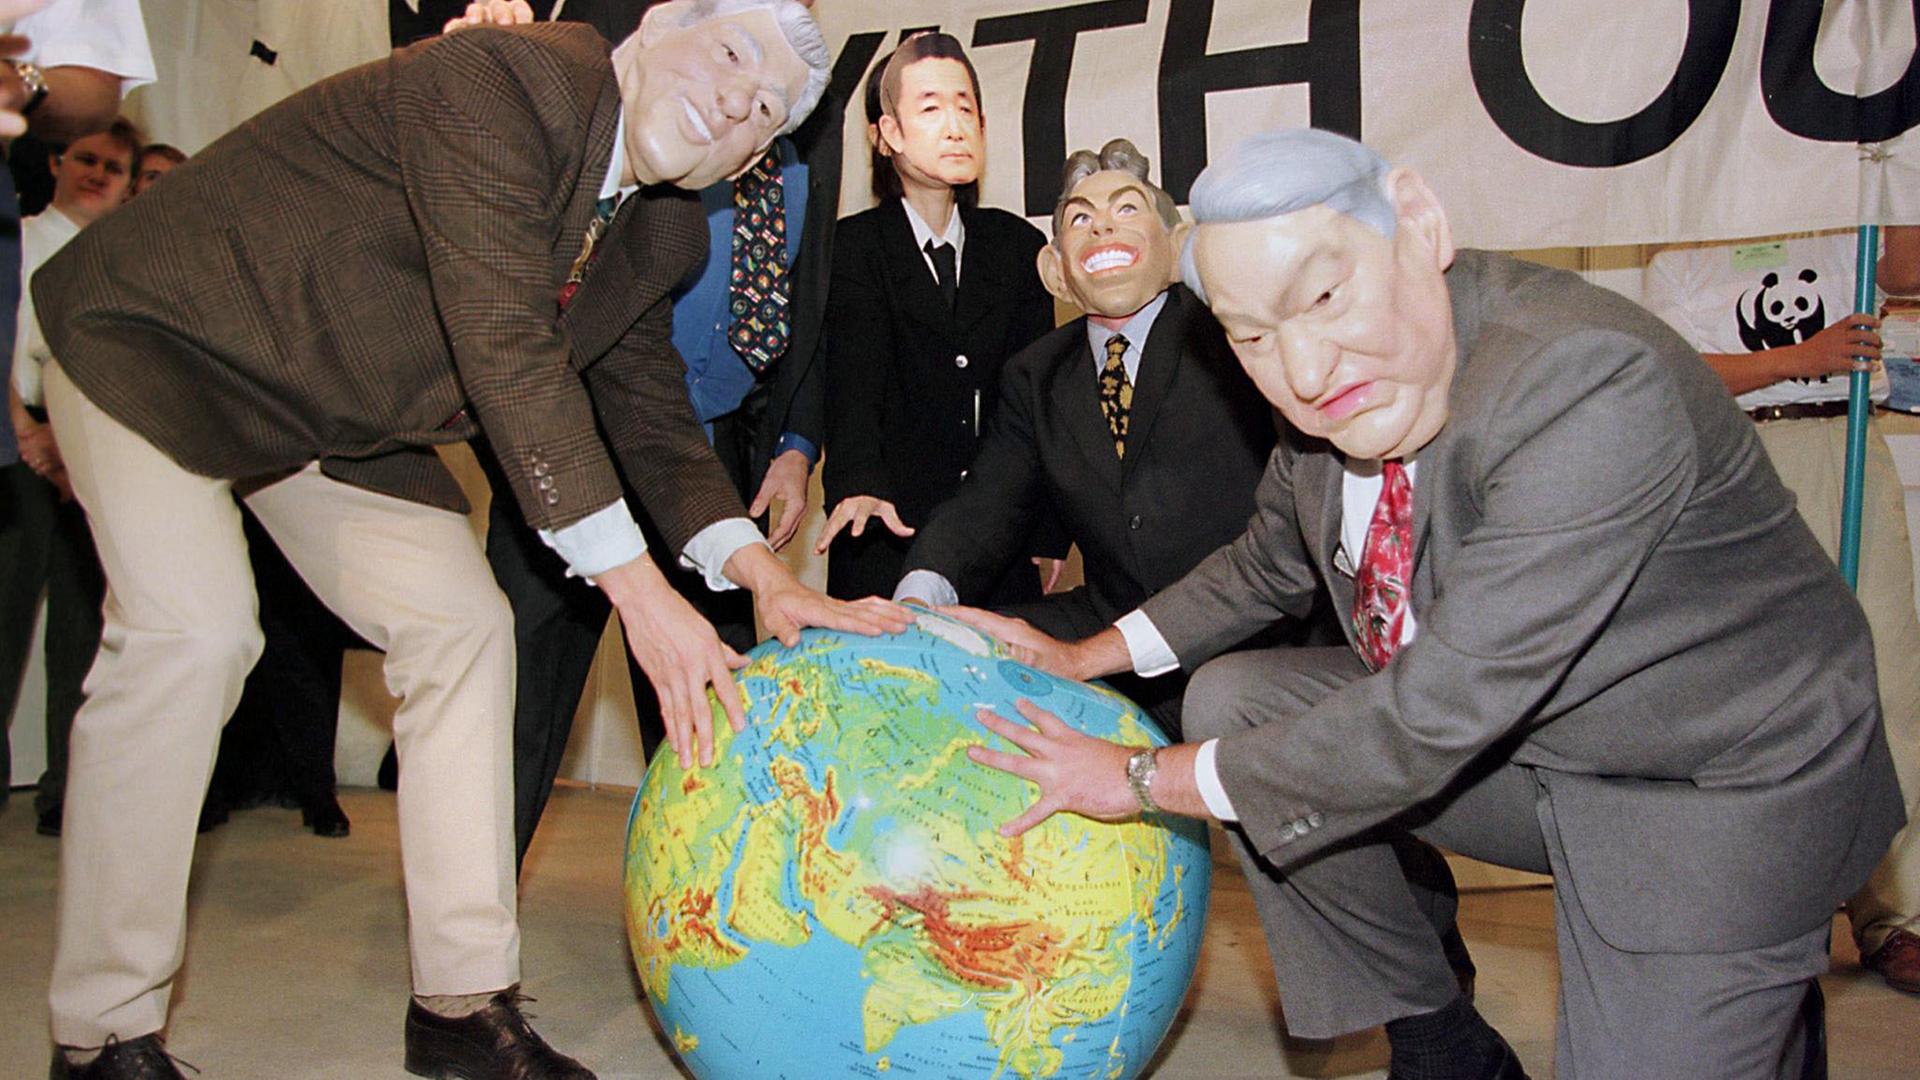 Protest-Aktion des WWF während der Klimakonferenz  1997 in Kyoto: Aktivisten maskiert als Bill Clinton, Helmut Kohl, Ryutaro Hashimoto, Tony Blair und Boris Jelzin.